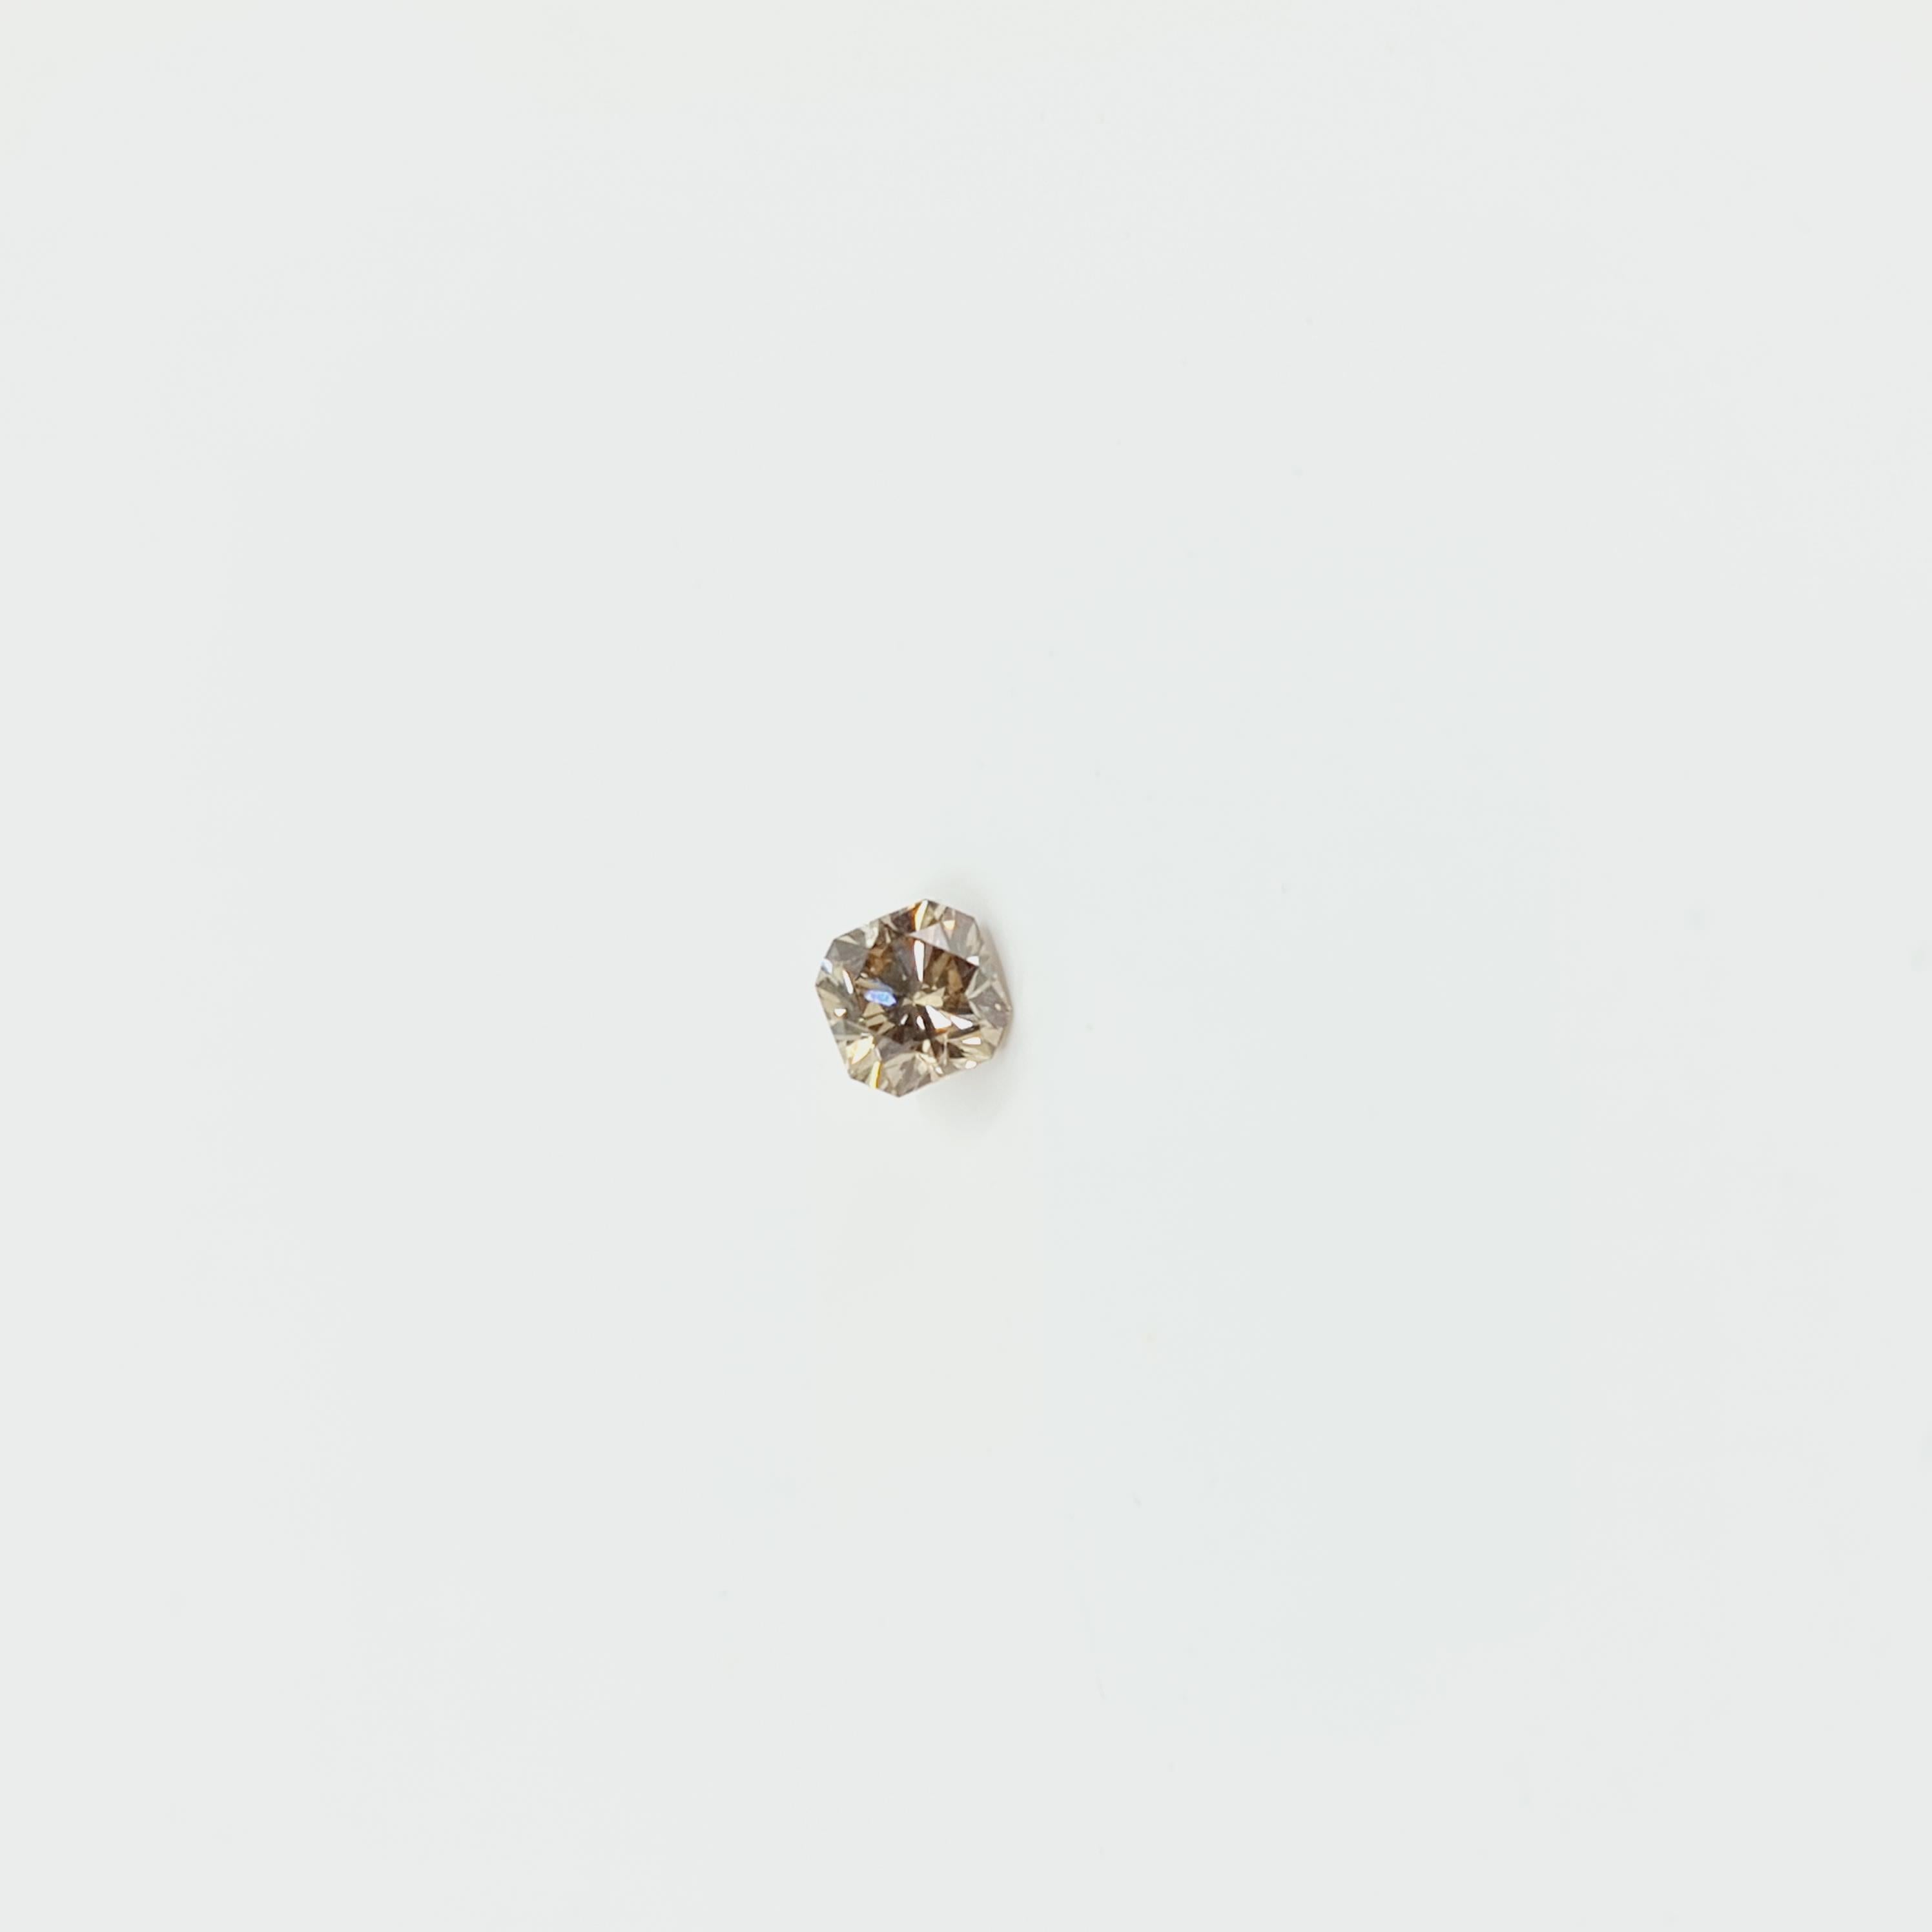 Diamant certifié GIA de couleur Brown (sans reflet) 0,47 carat VS2 